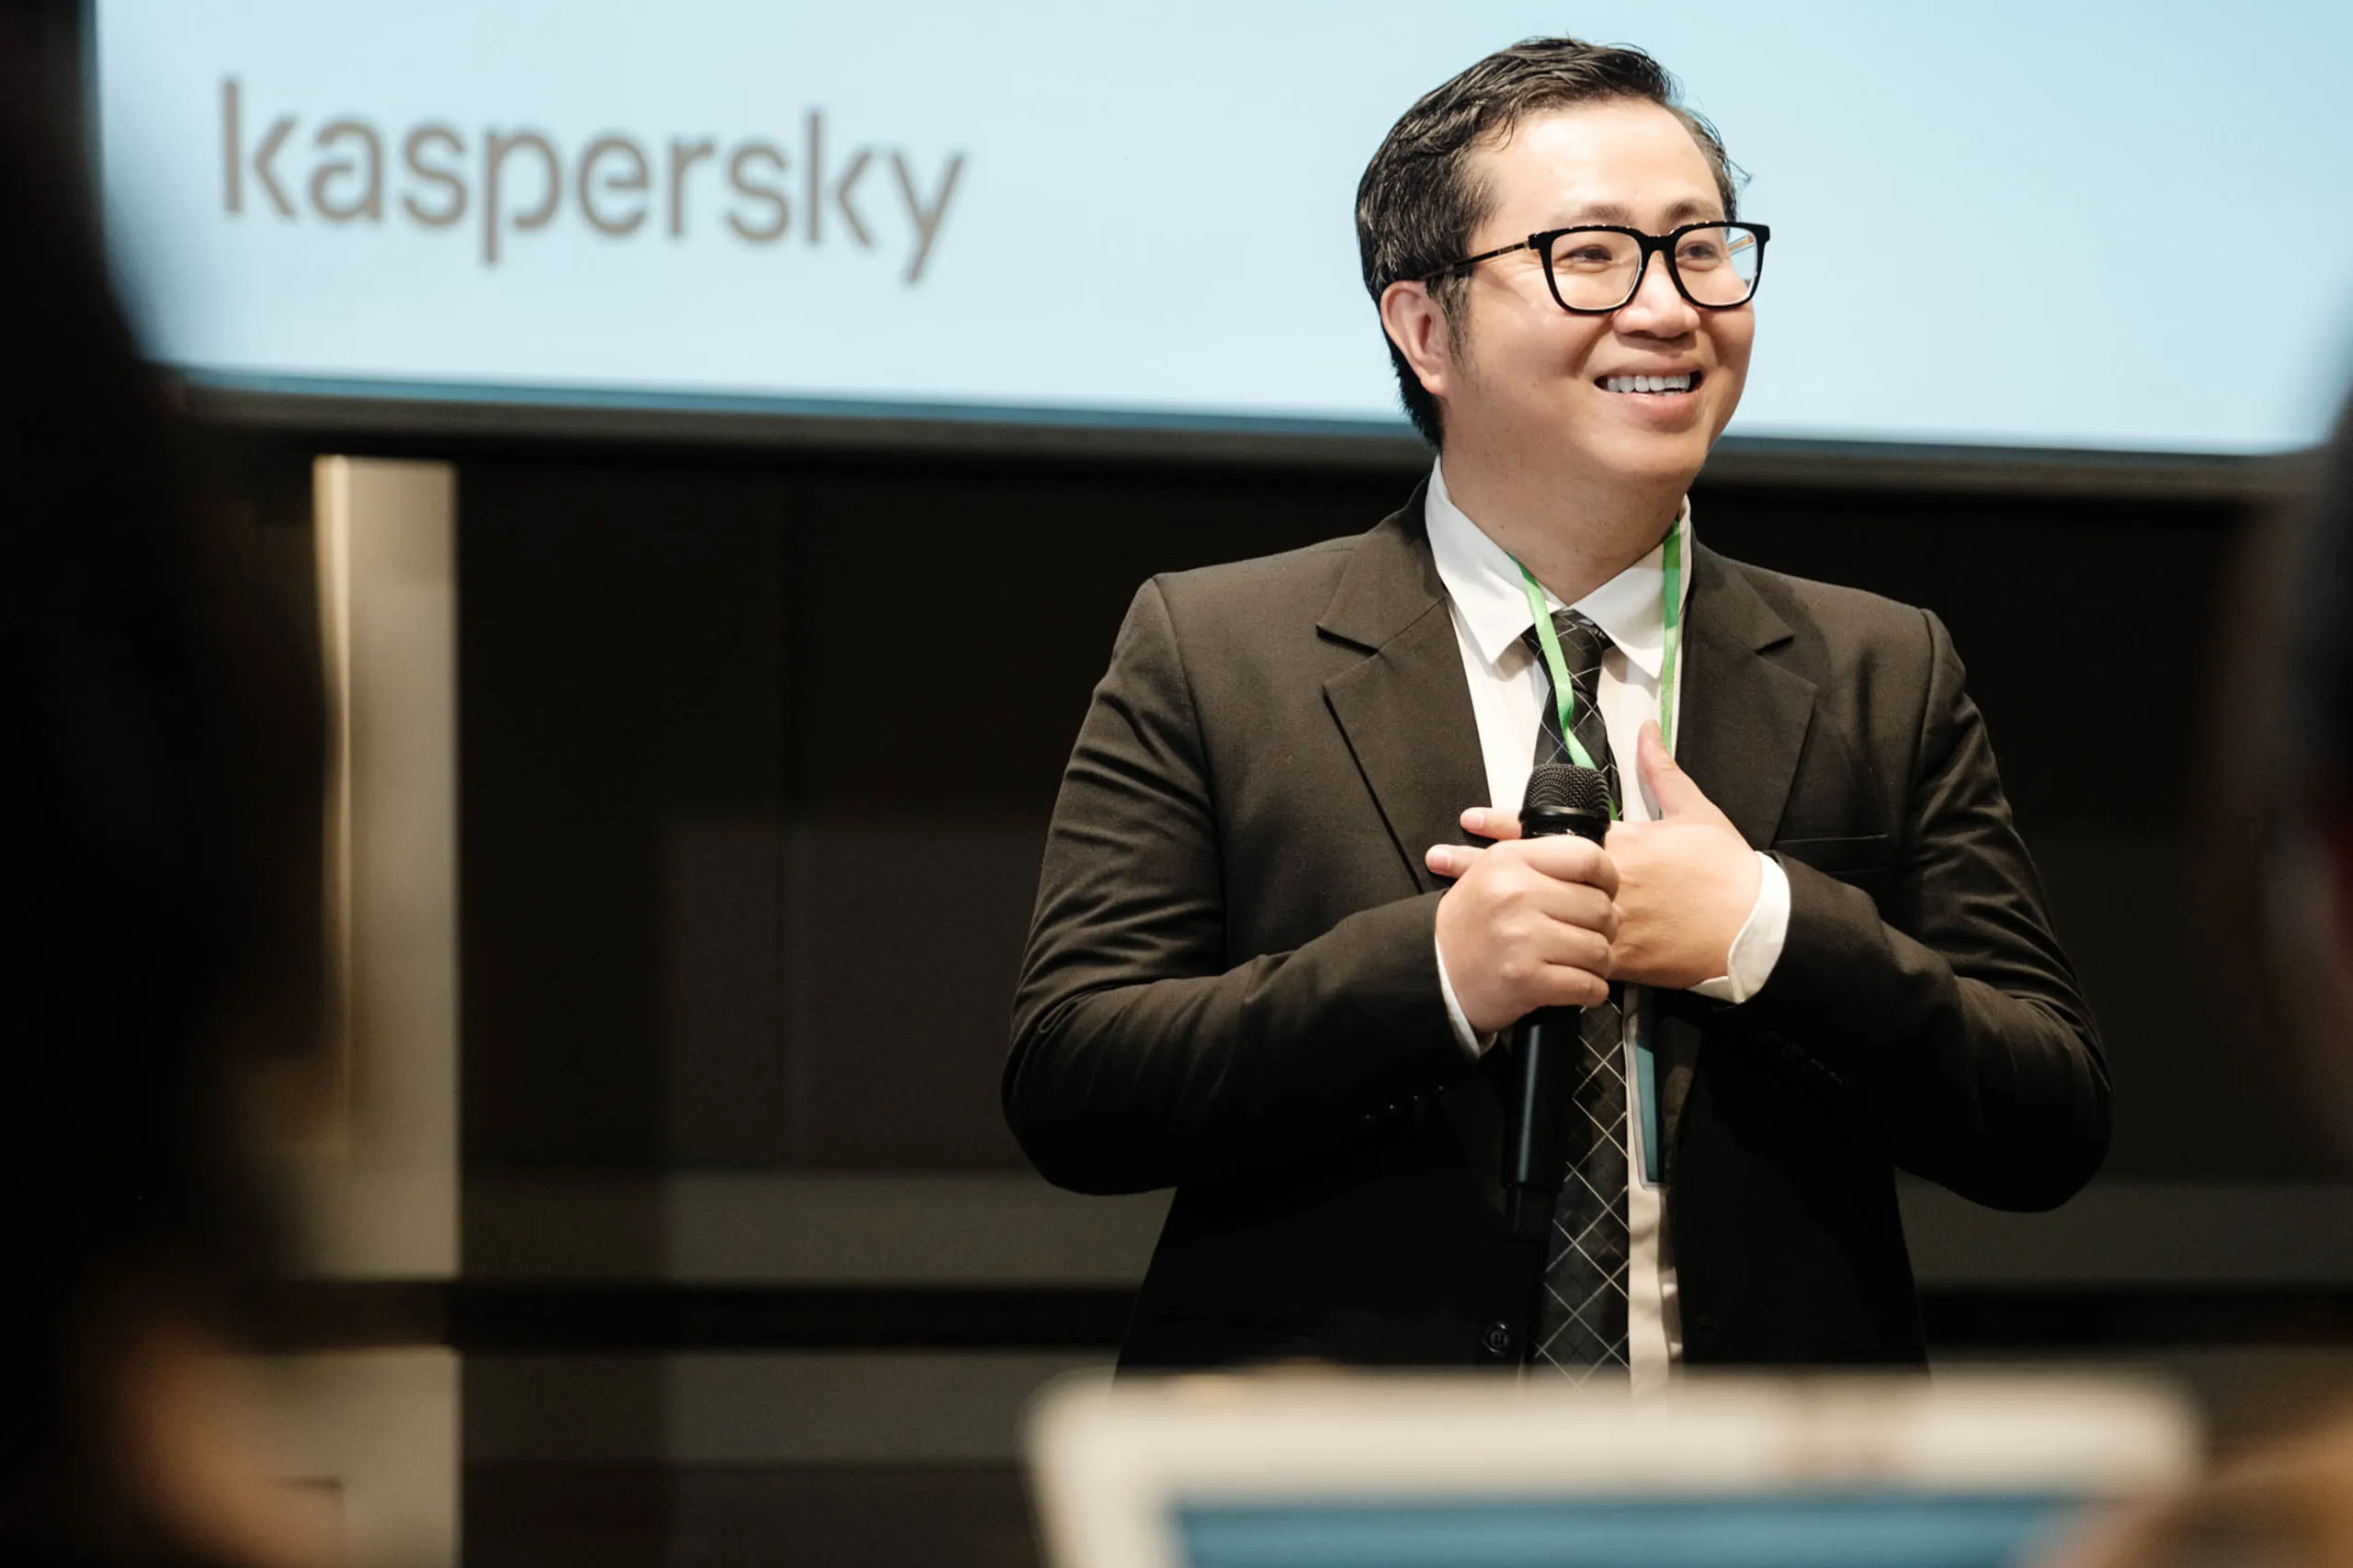 Kaspersky Next: Dòng sản phẩm bảo mật chủ lực hoàn toàn mới dành cho doanh nghiệp tại Việt Nam